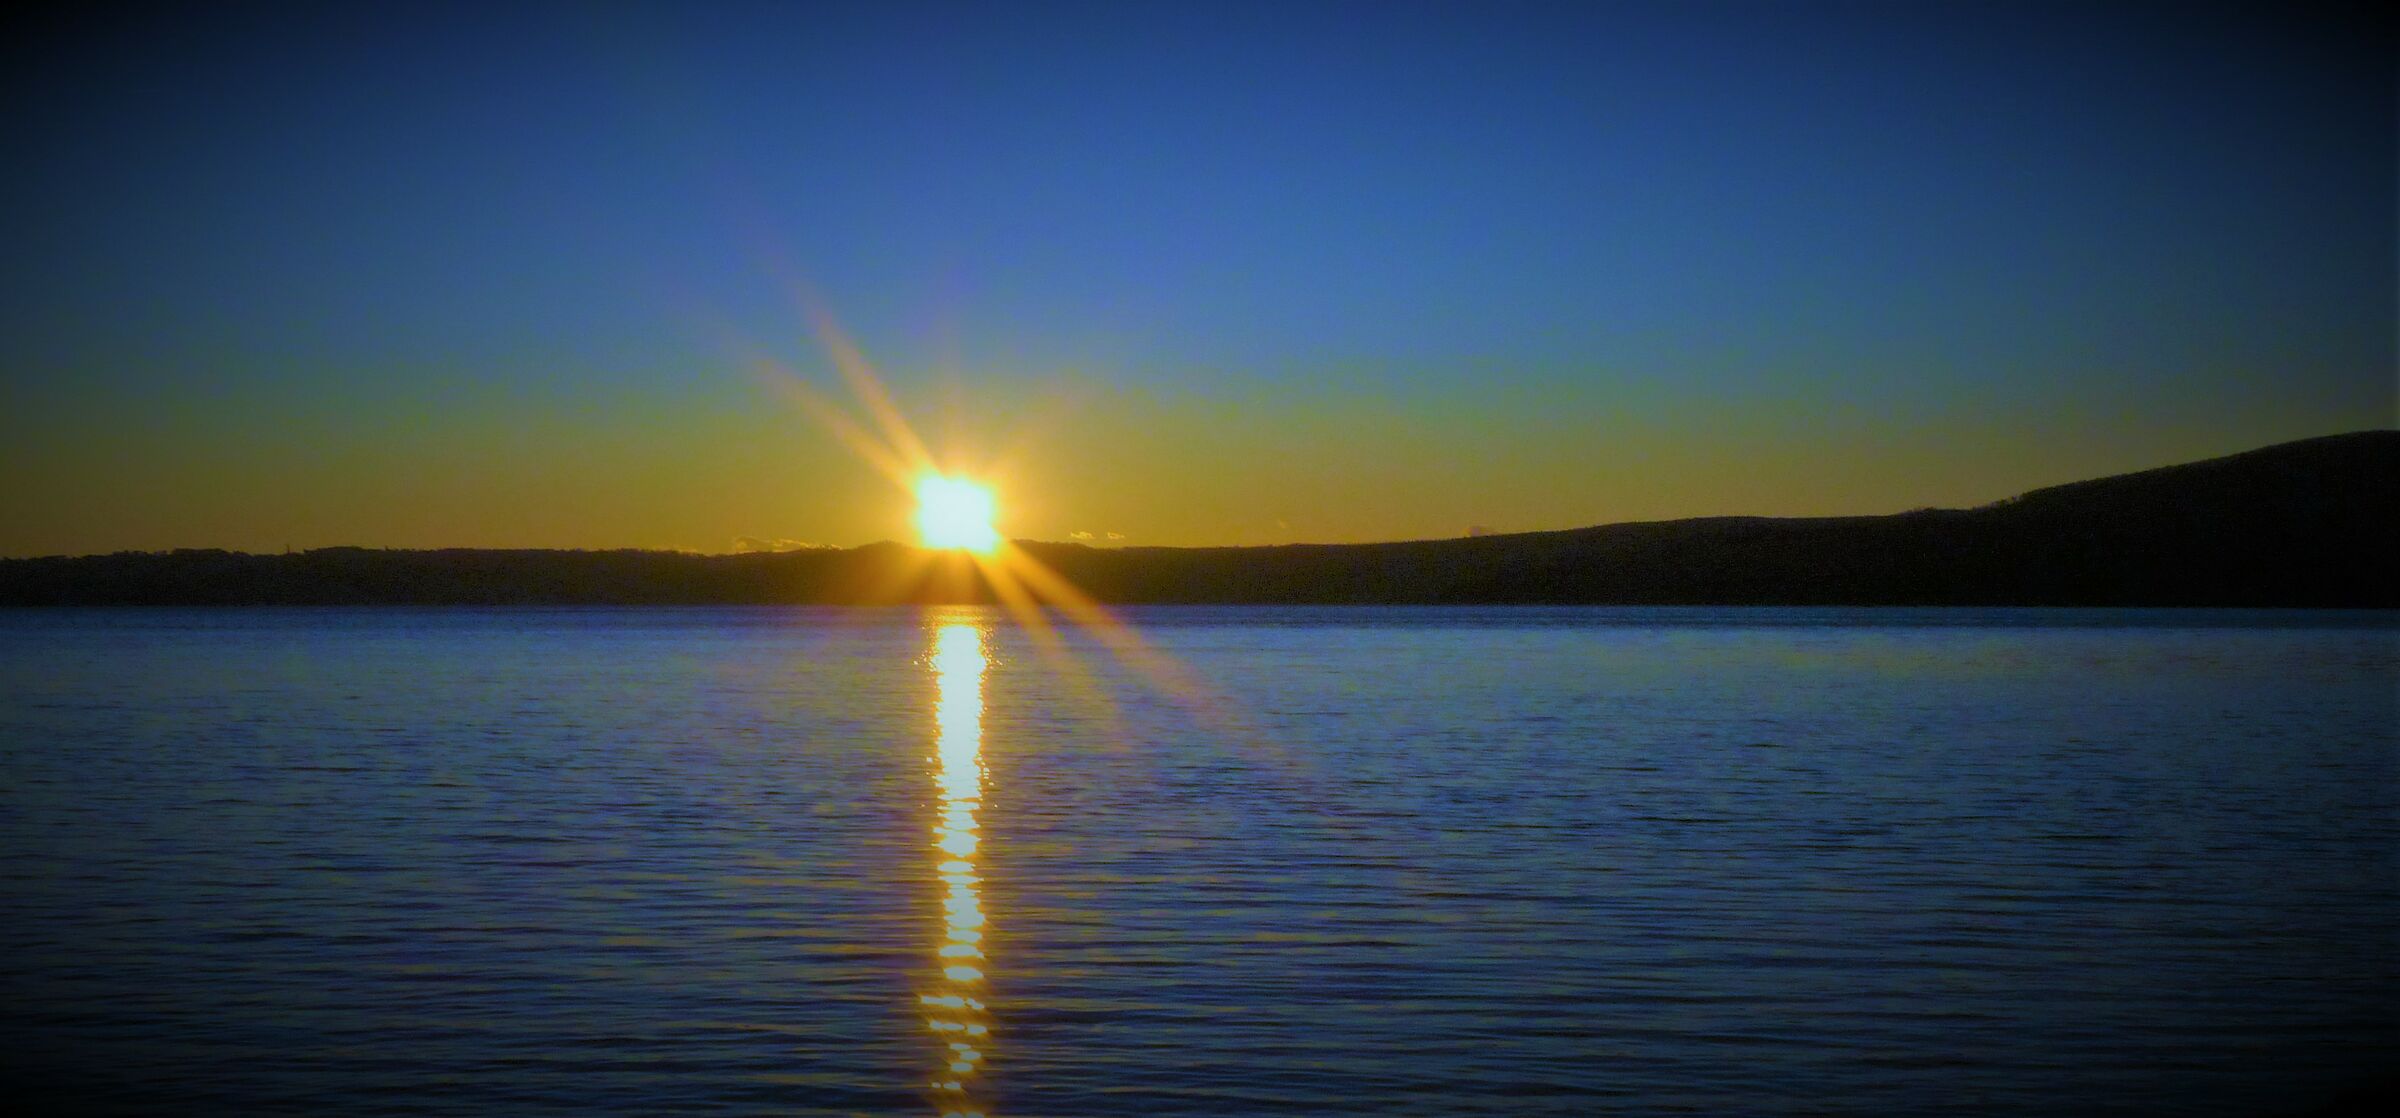 Sunset at the lake...